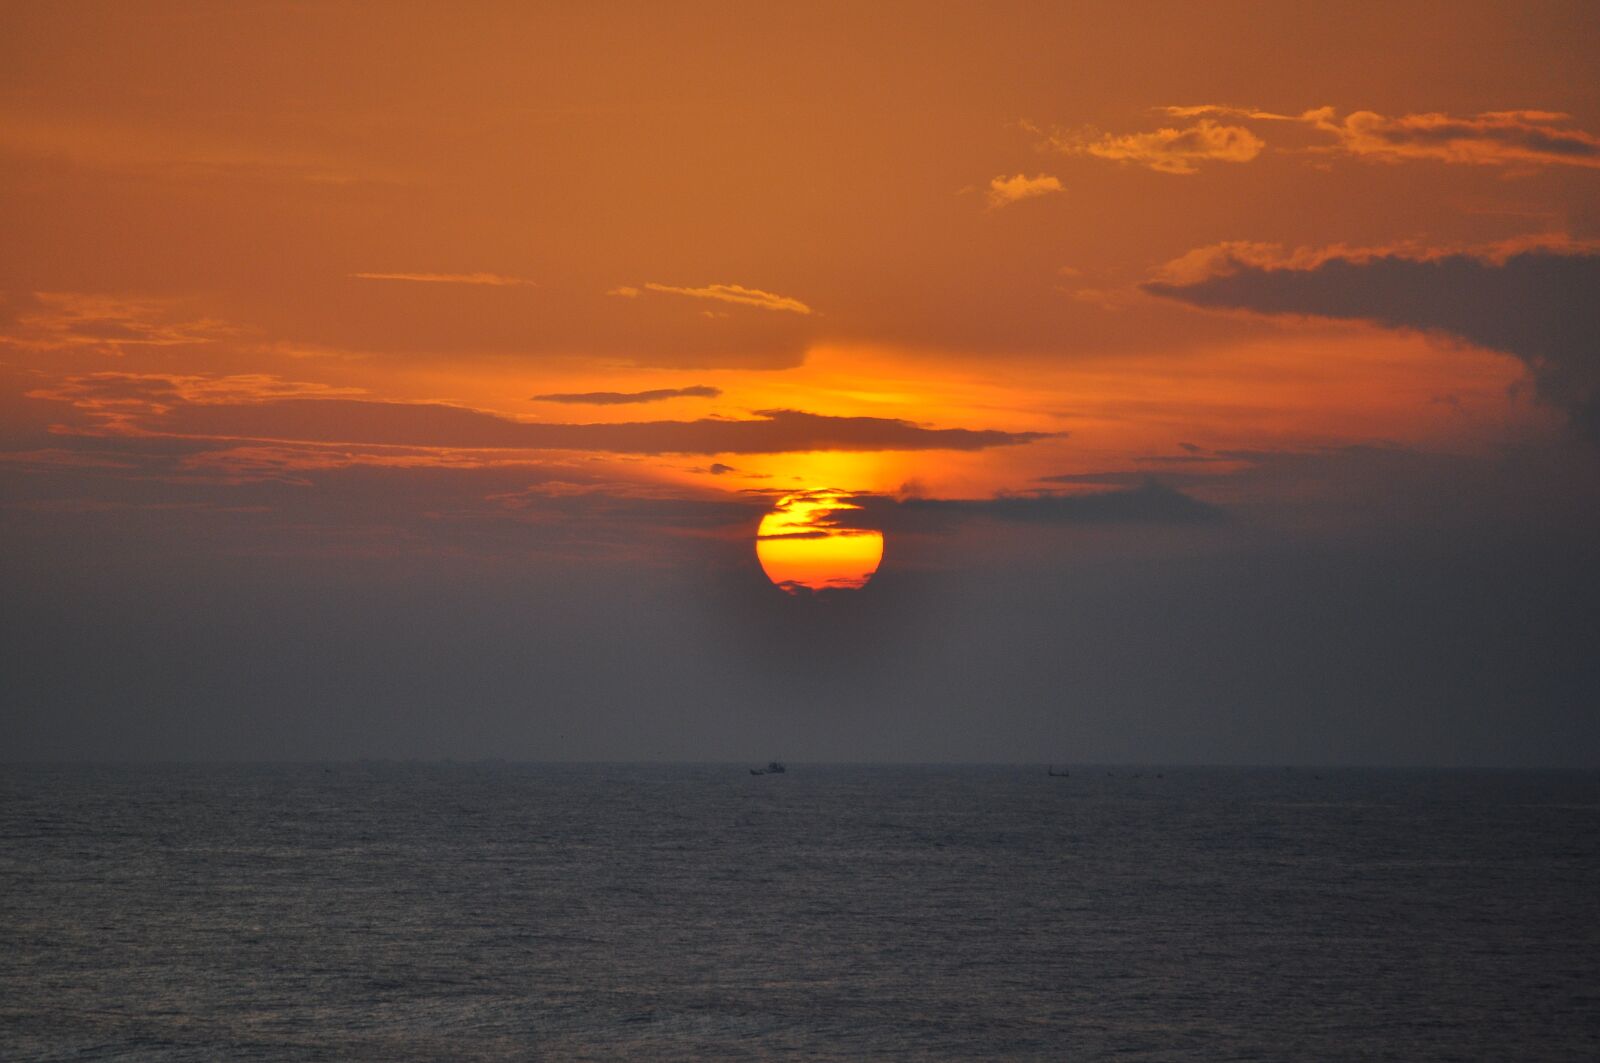 Nikon D90 sample photo. Dawn, sky, beach photography